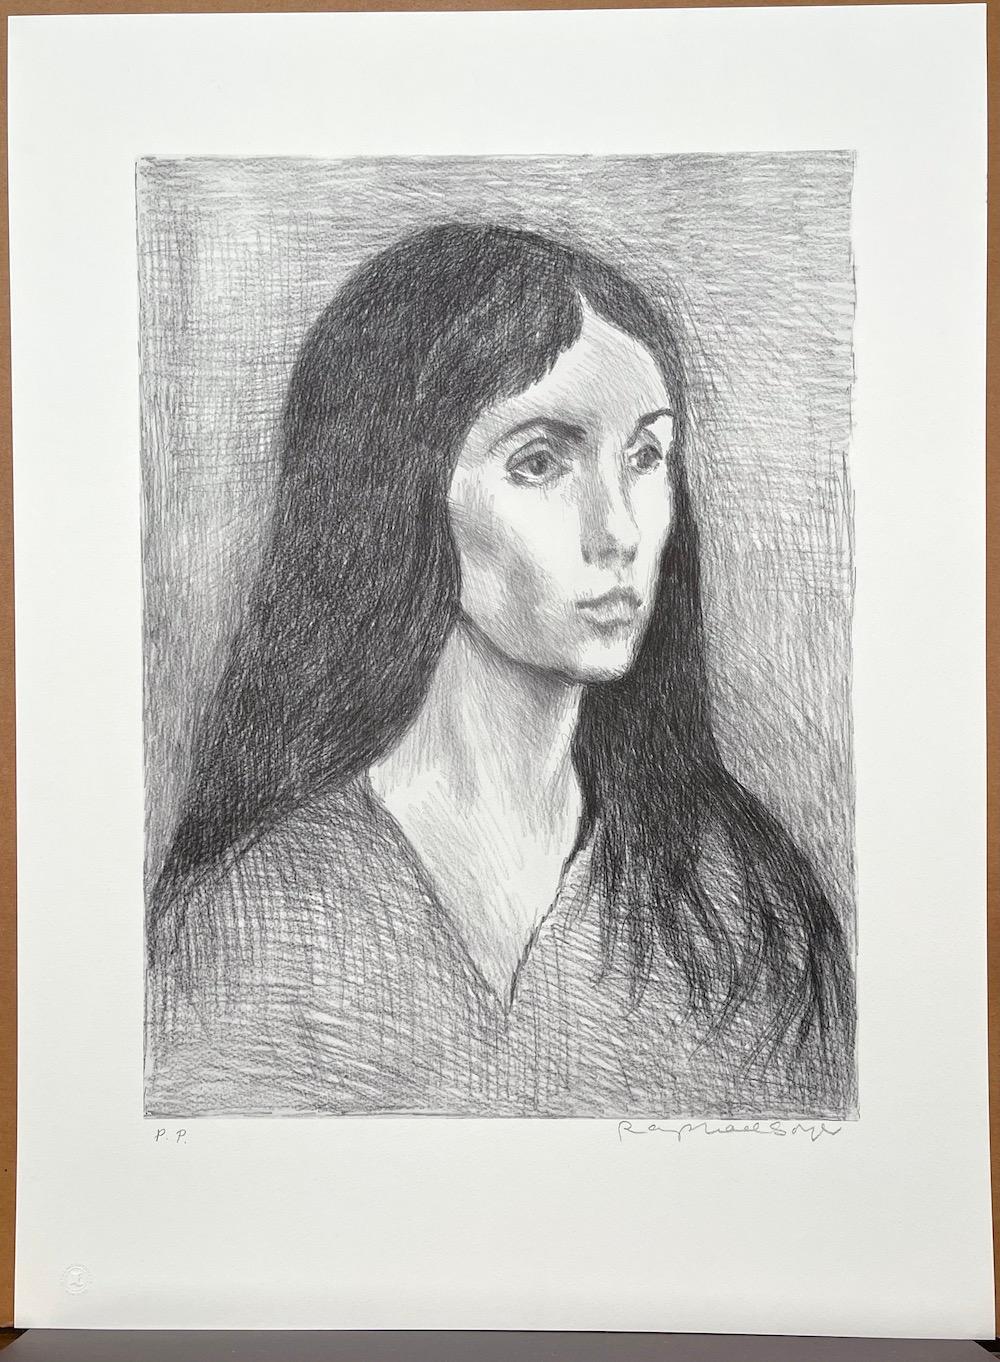 WOMAN LONG DARK HAIR est une lithographie originale dessinée à la main (non reproduite numériquement ou par photo) en édition limitée de l'artiste Raphael Soyer - Peintre russe/américain du réalisme social, 1899-1987. WOMAN LONG DARK HAIR a été